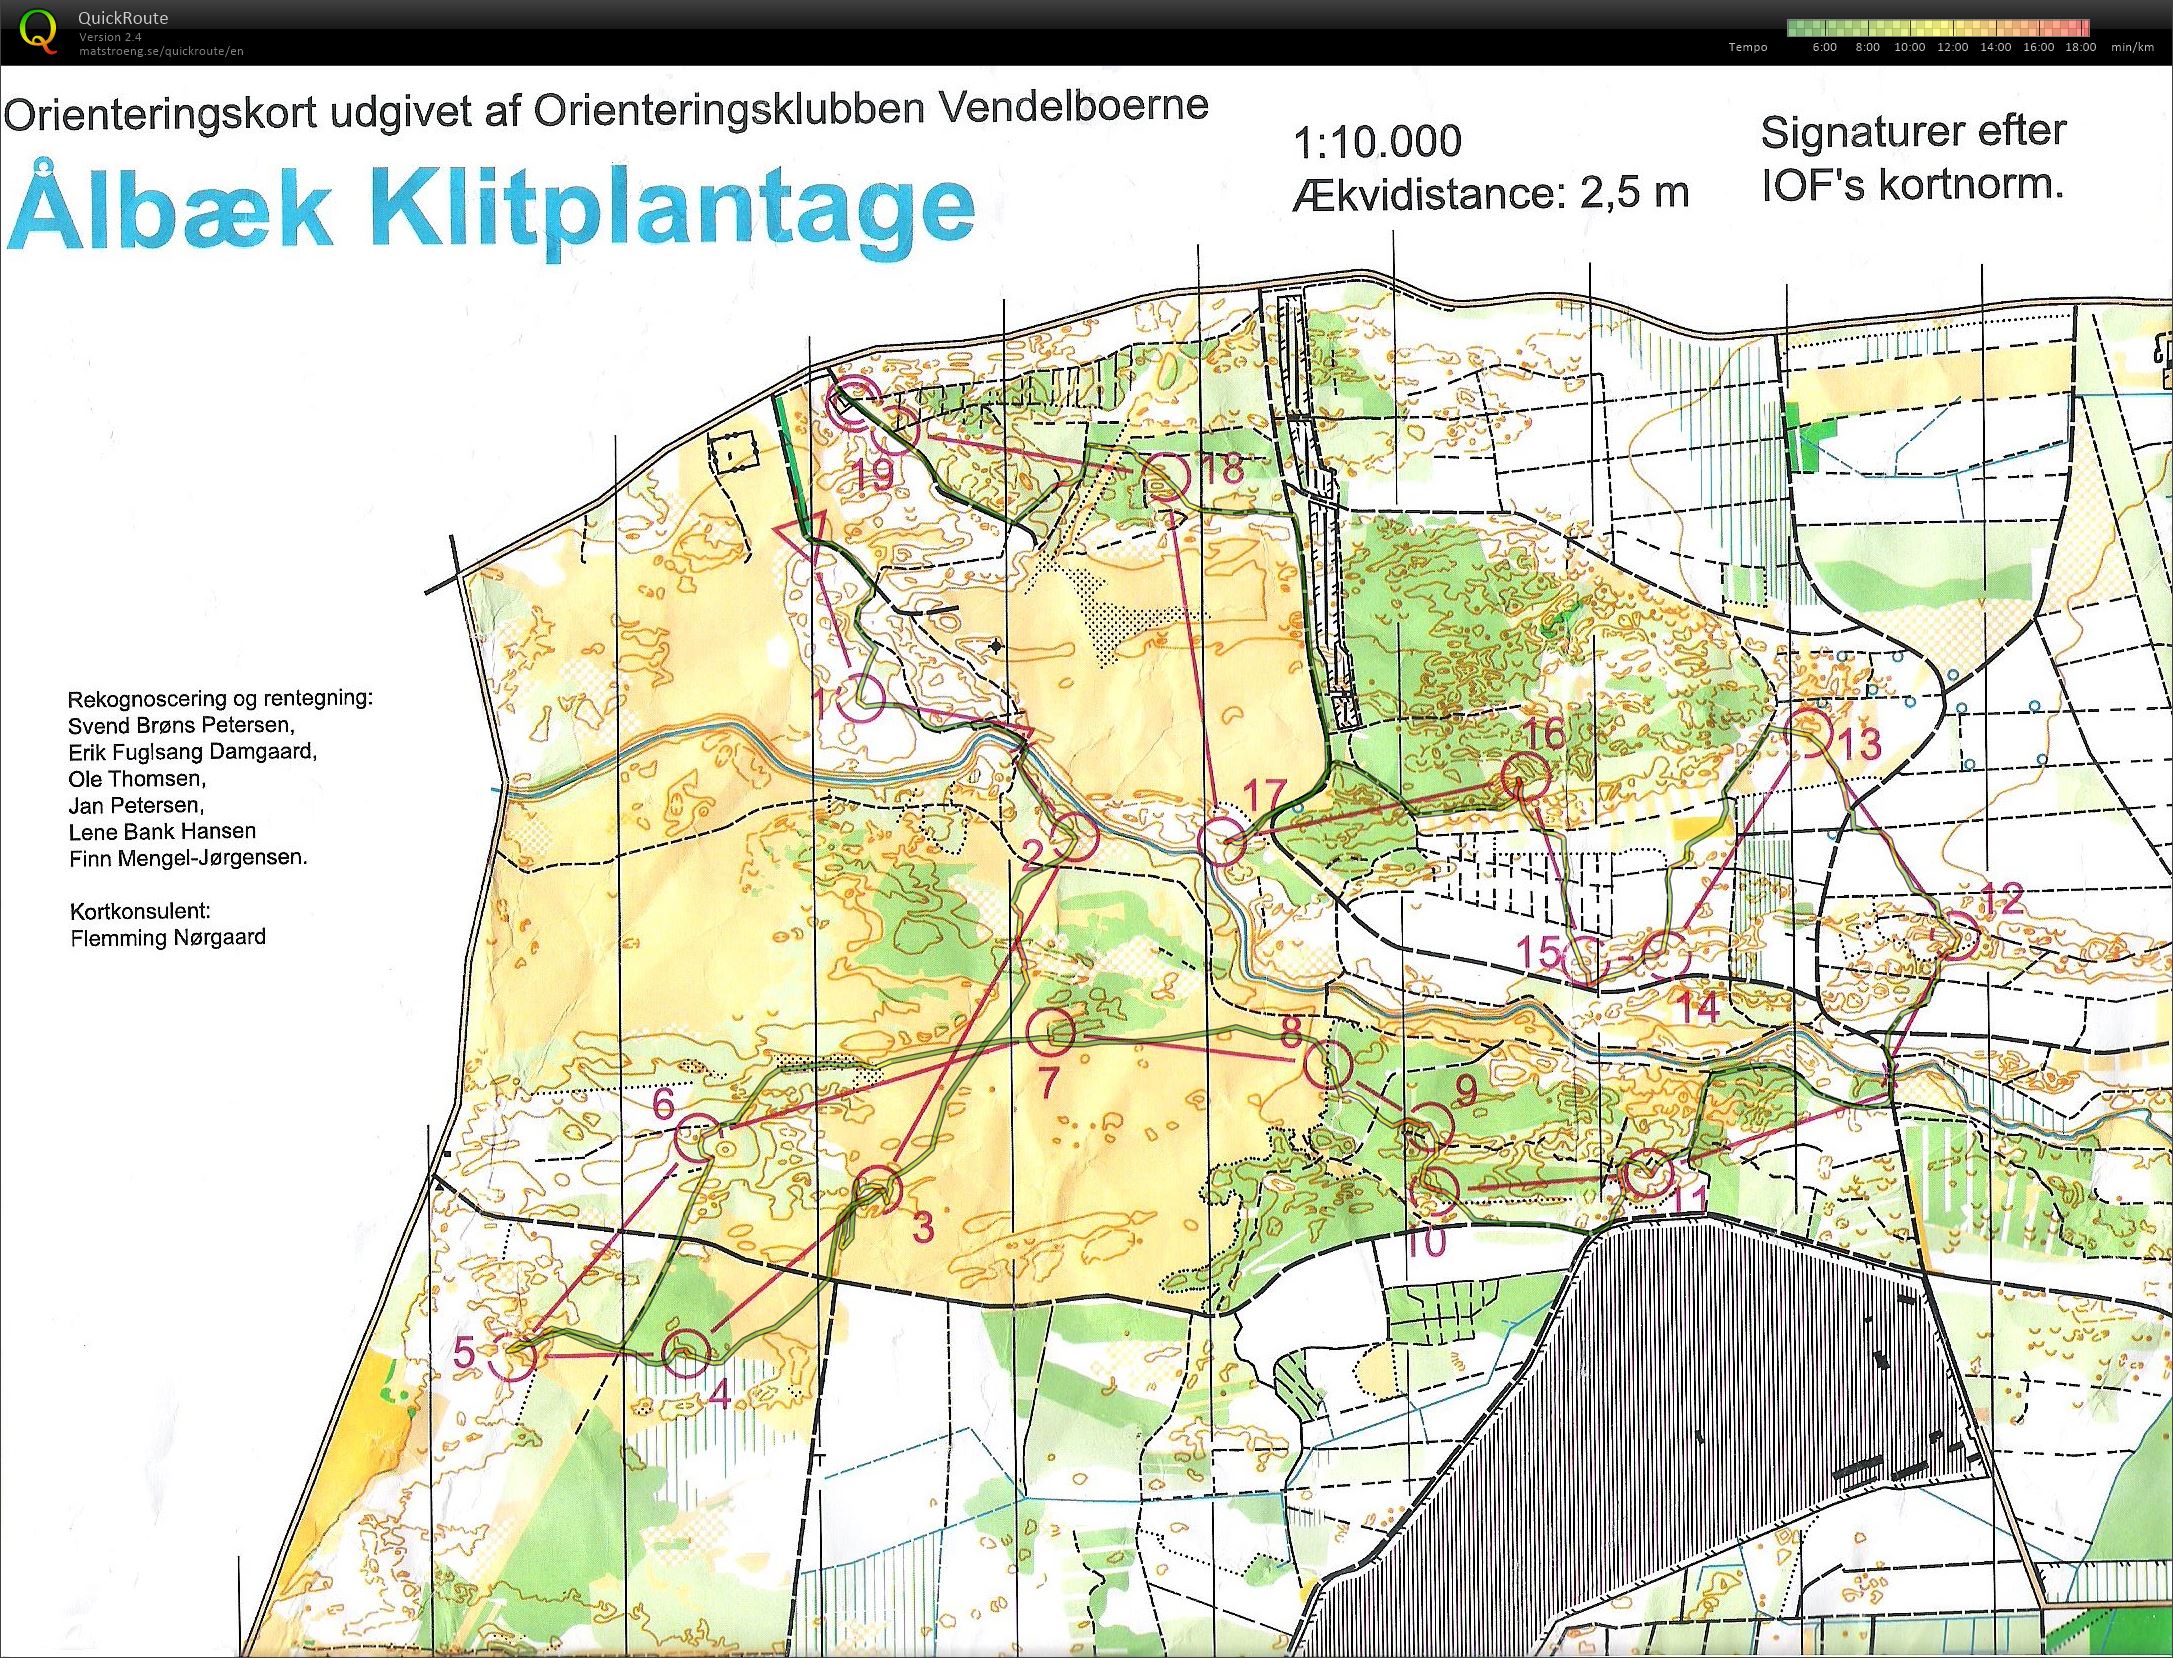 NJM Natløb Ålbæk Klitplantage - H45 - 6.2 km. (24.09.2014)